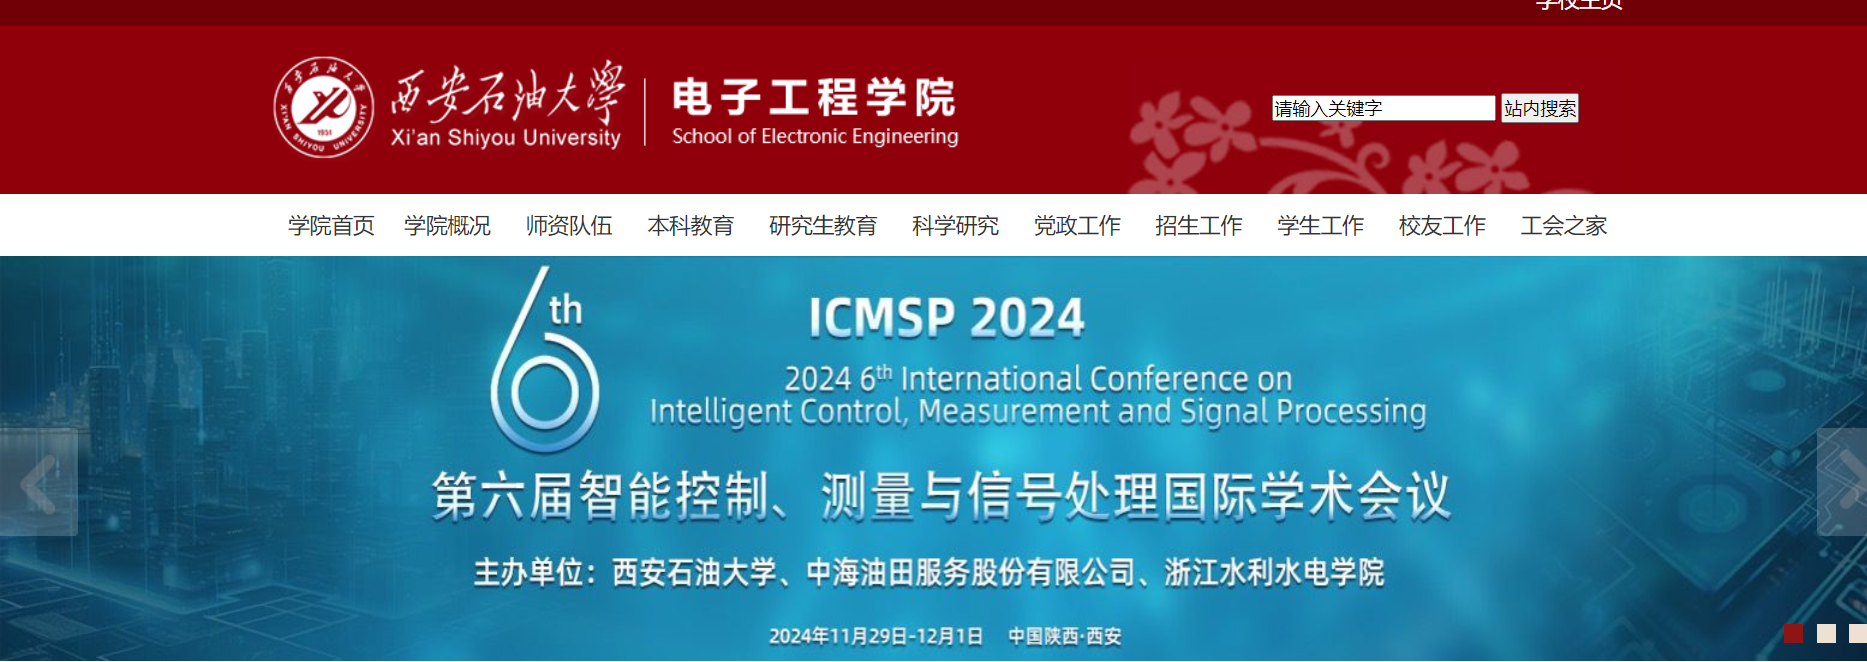 ICMSP 2024上线学院官网截图.png